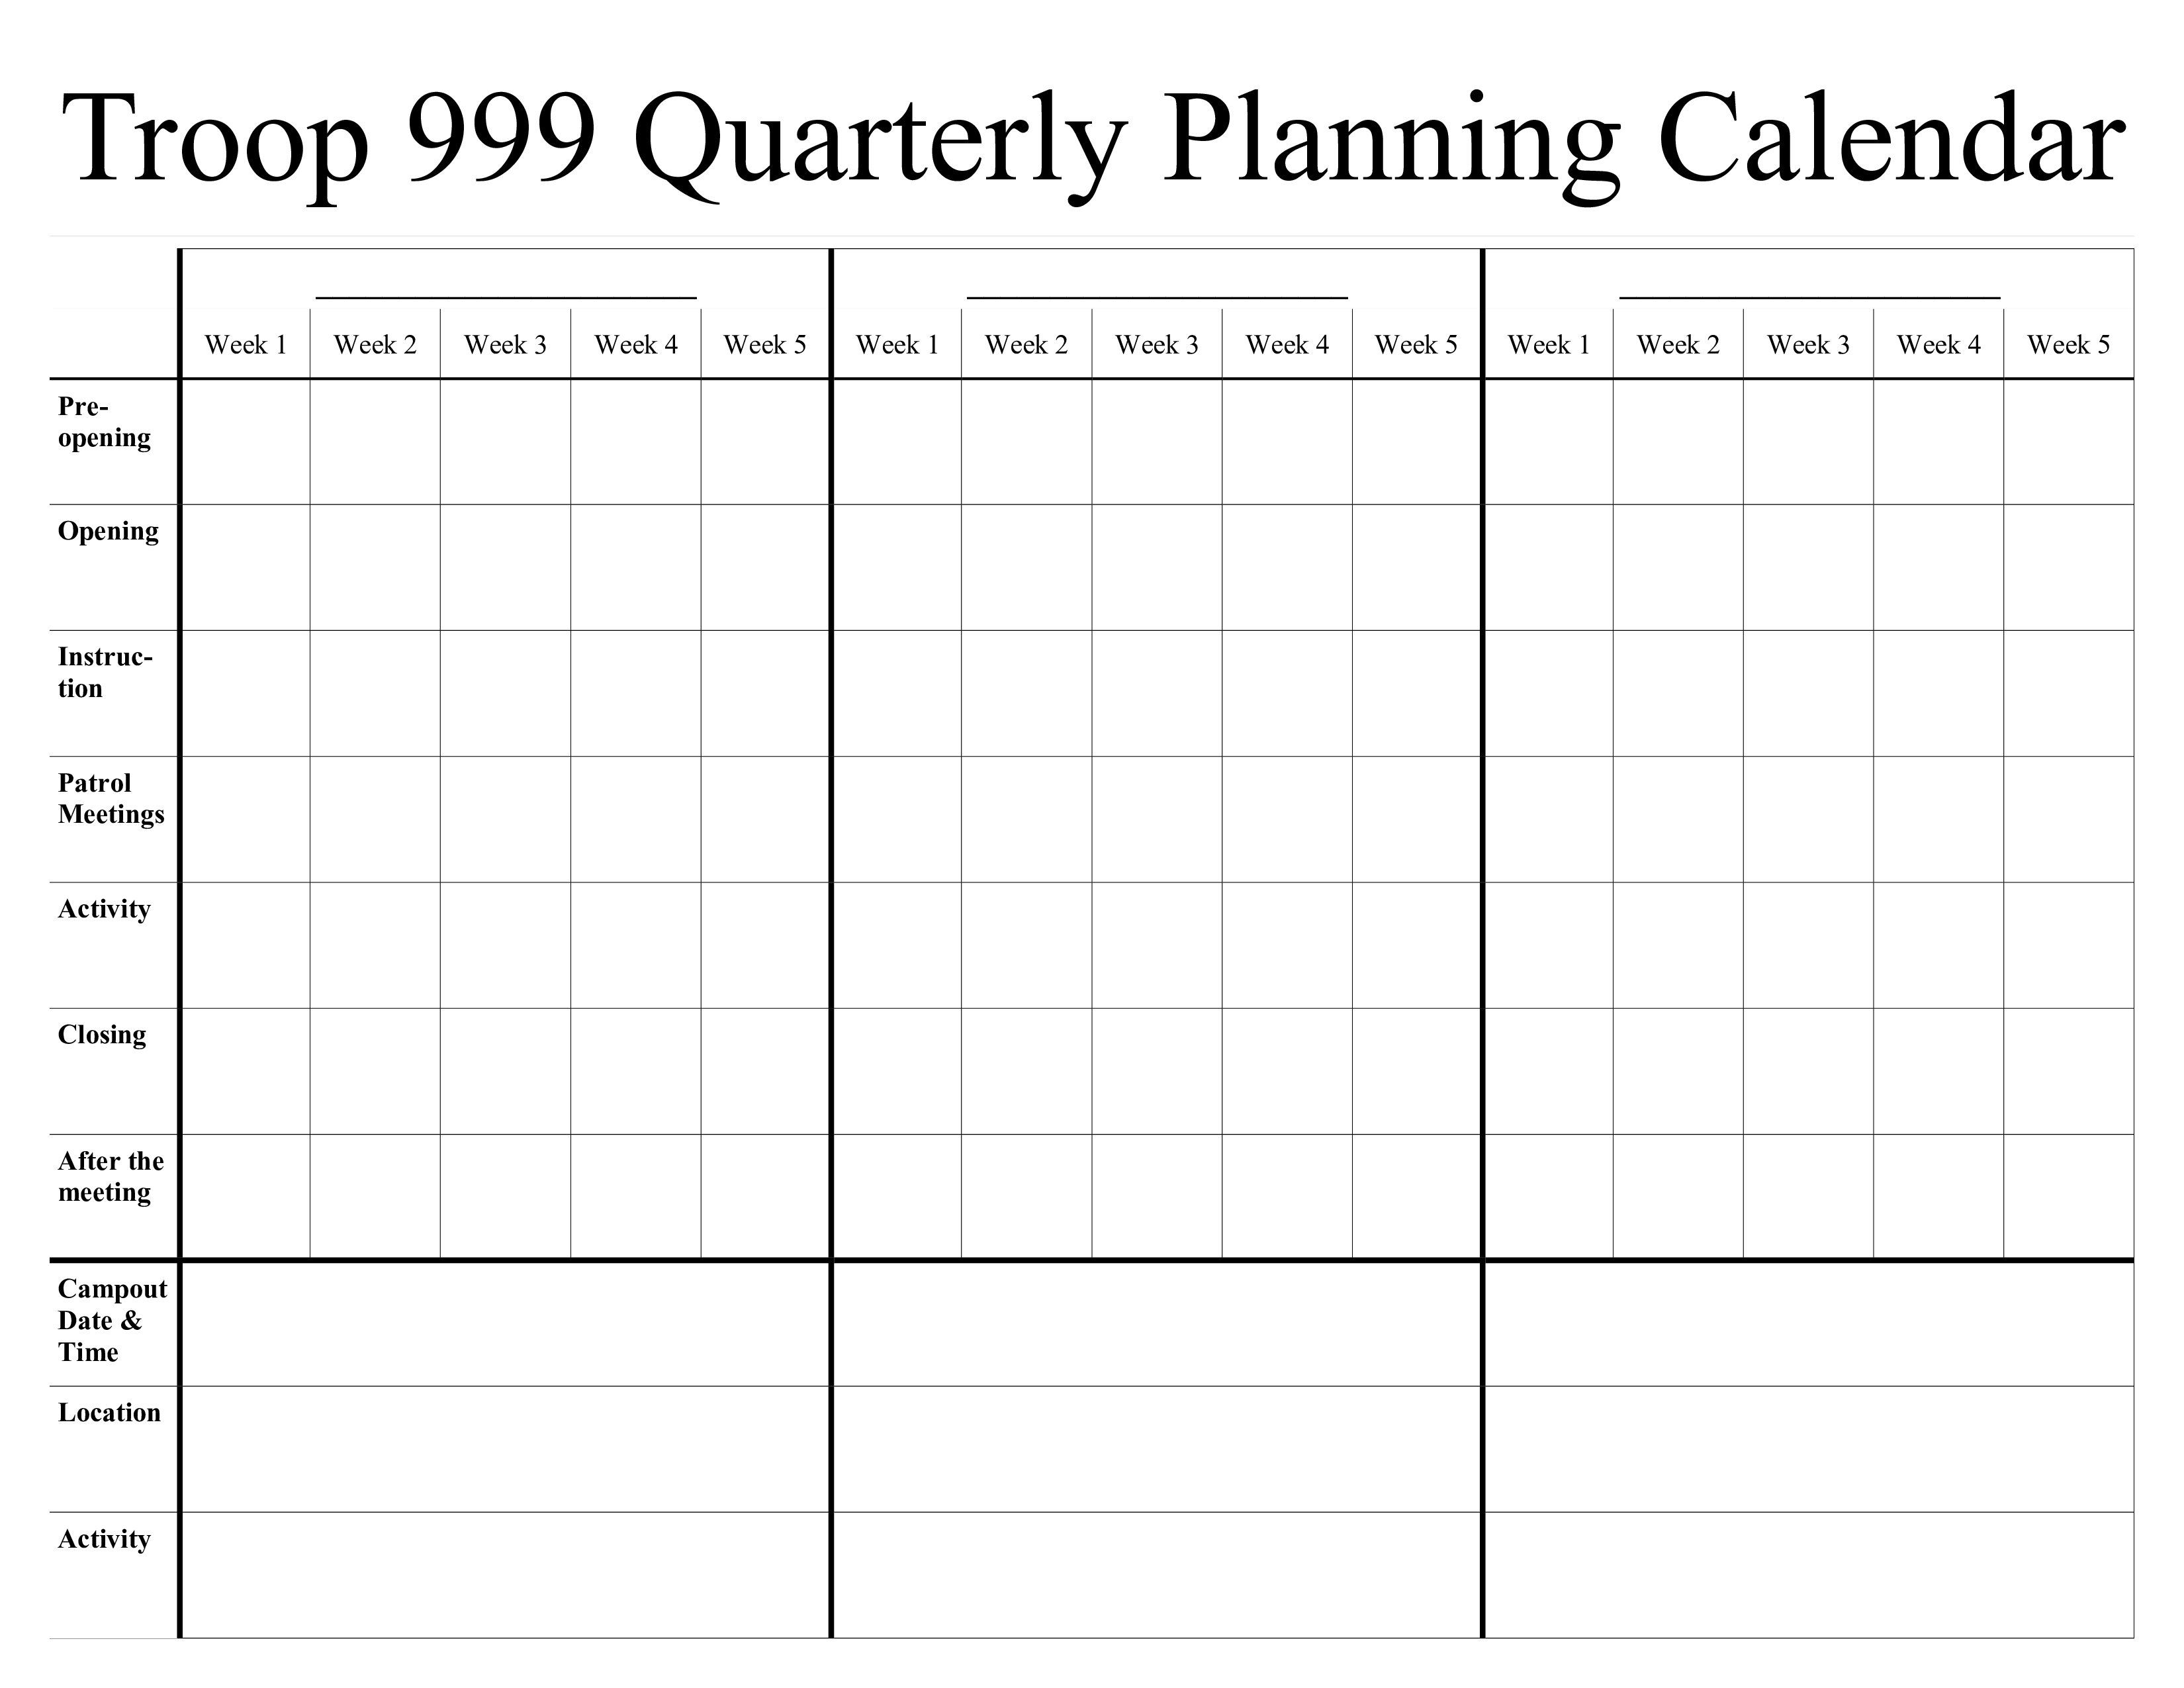 Quarterly Calendar Template 2018 from www.allbusinesstemplates.com